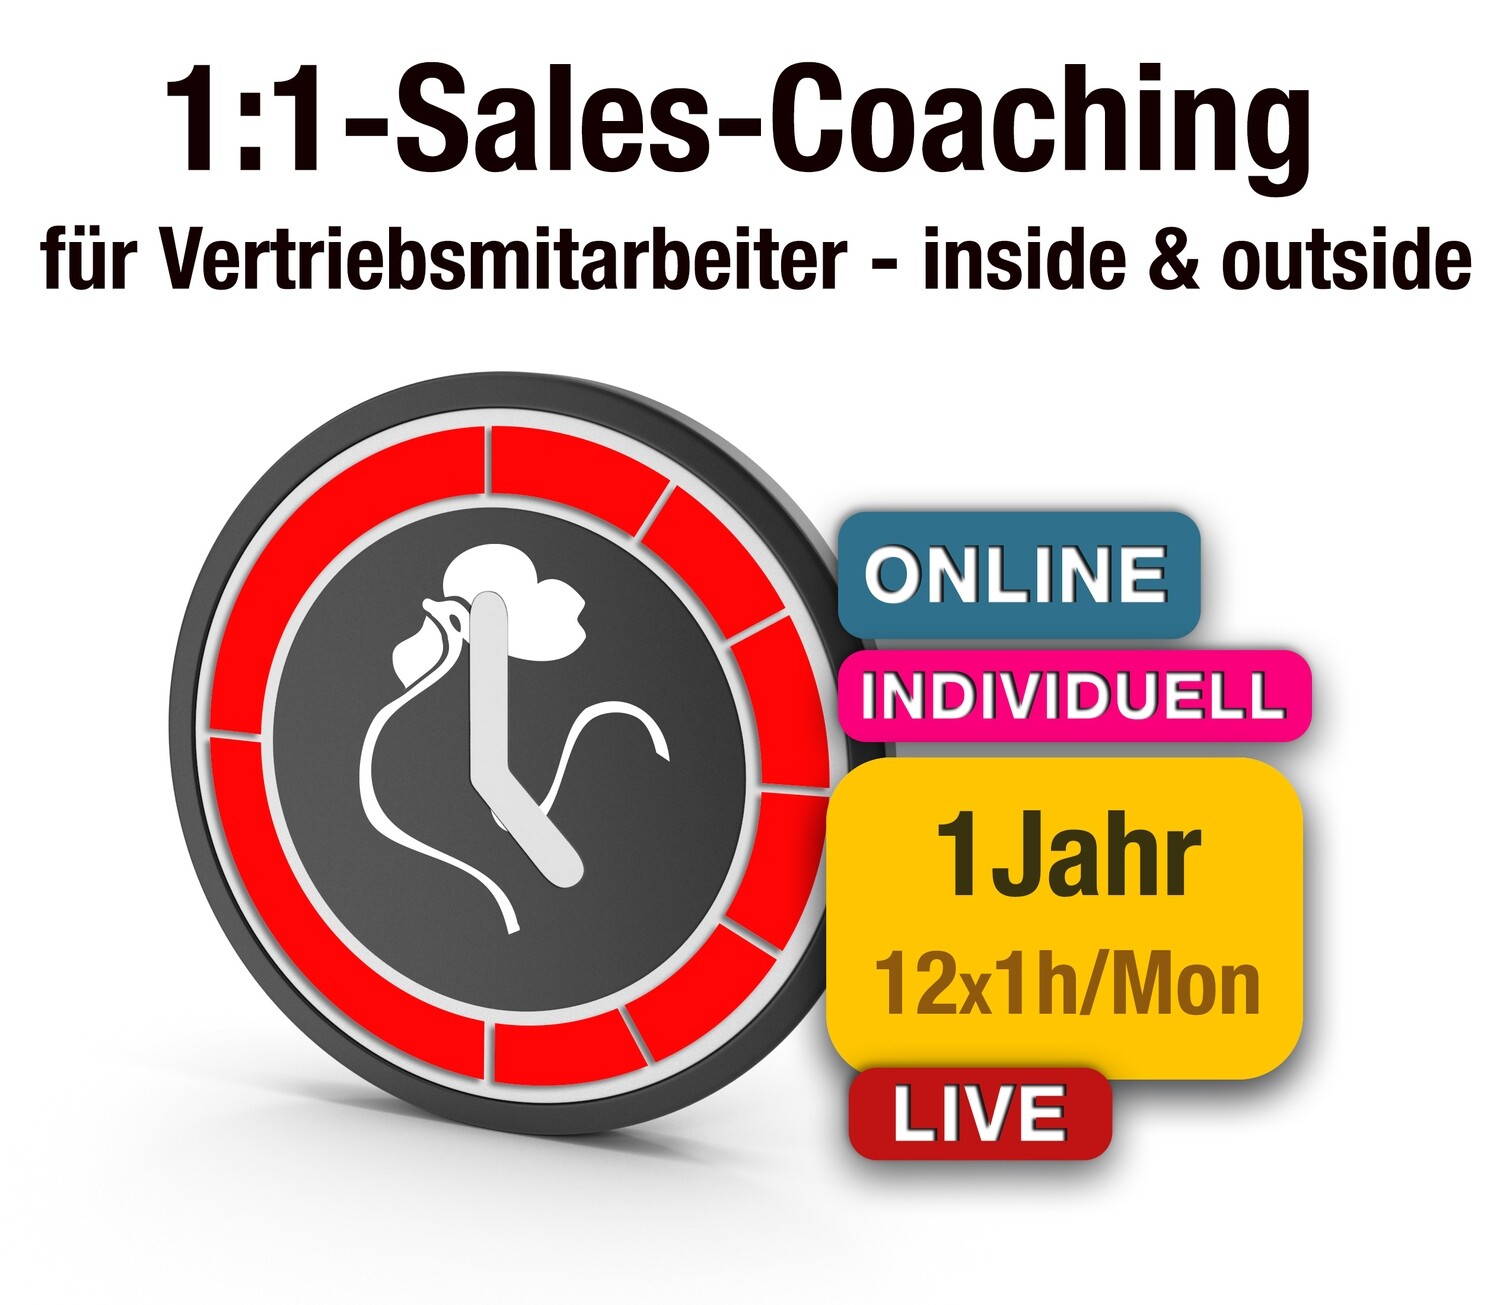 1:1-Sales-Coaching für Vertriebsmitarbeiter: € 79/Std.